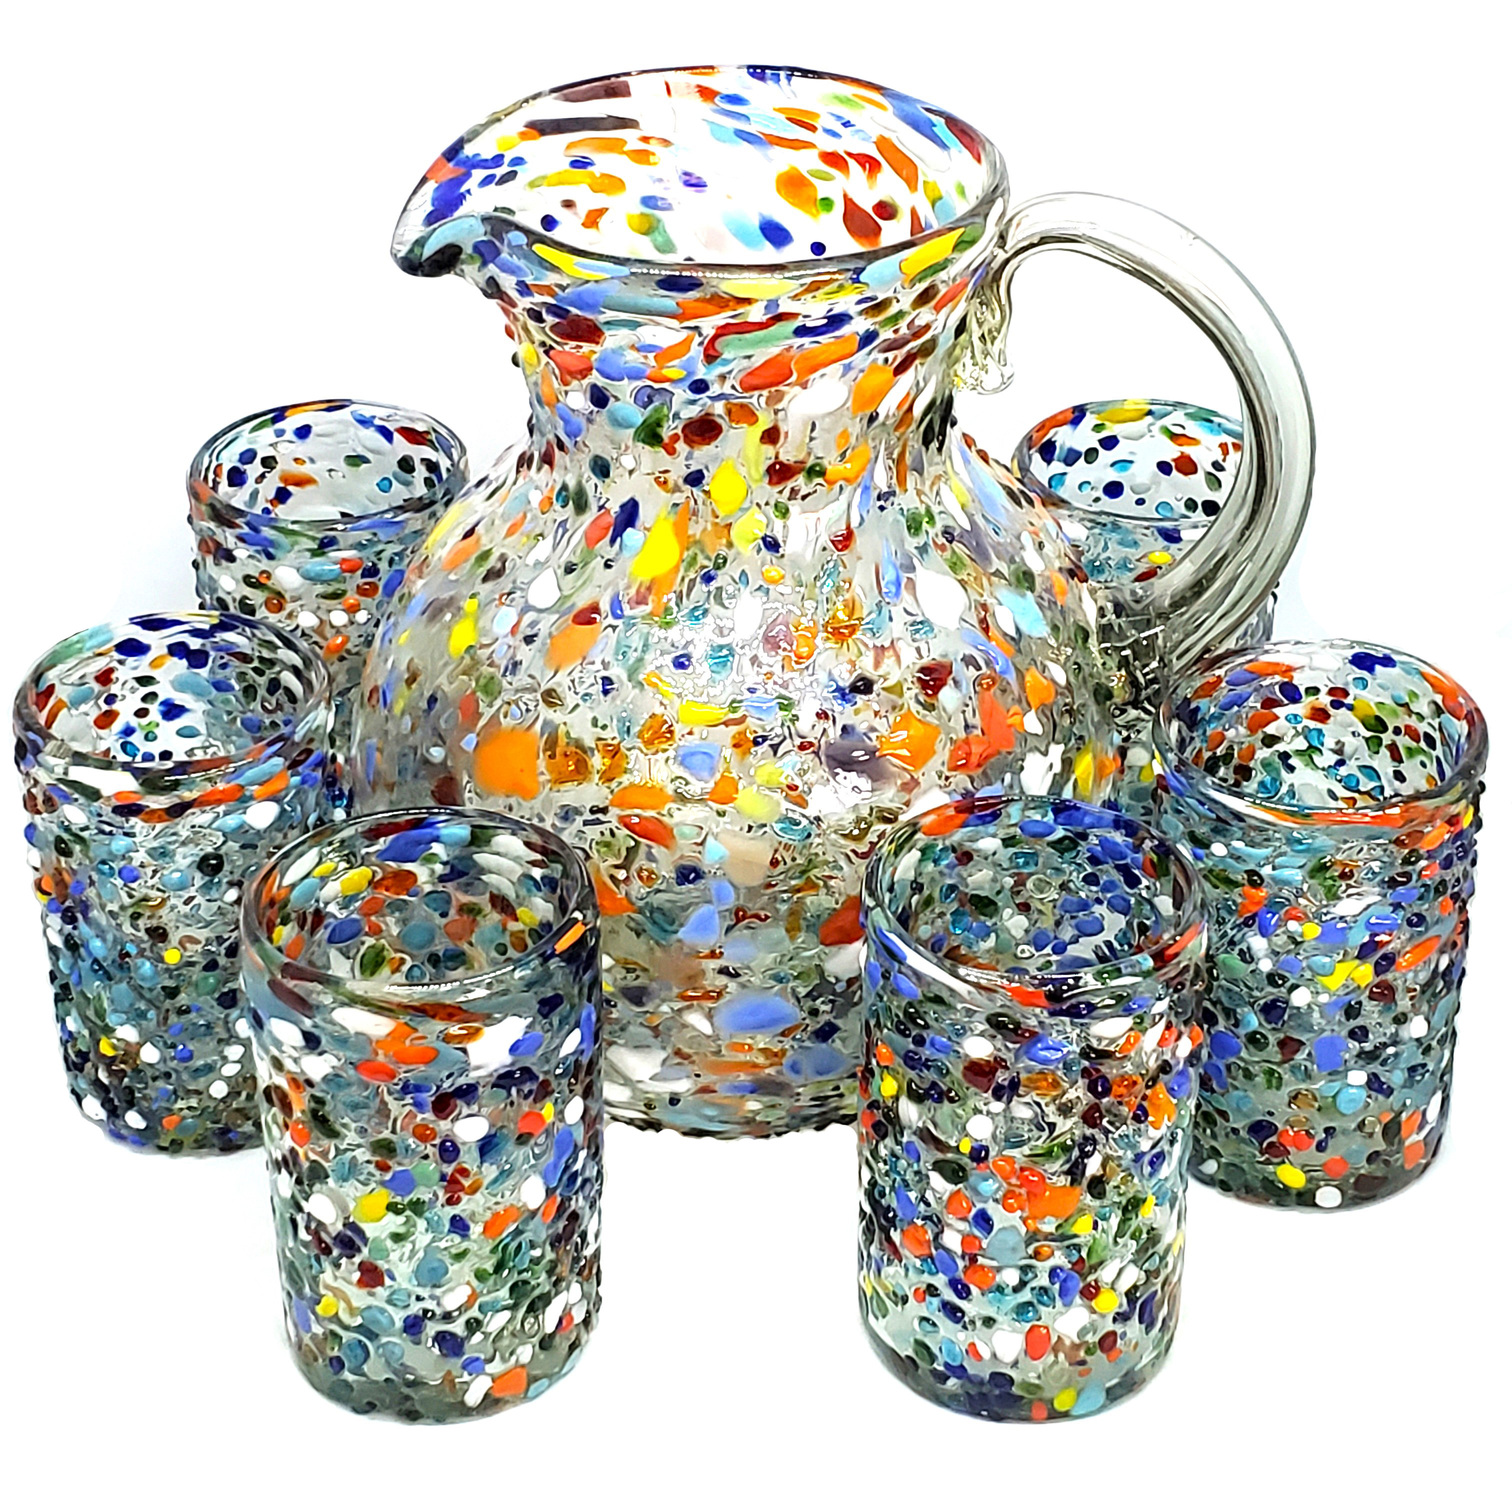 VIDRIO SOPLADO / Juego de jarra y 6 vasos grandes 'Confeti granizado'